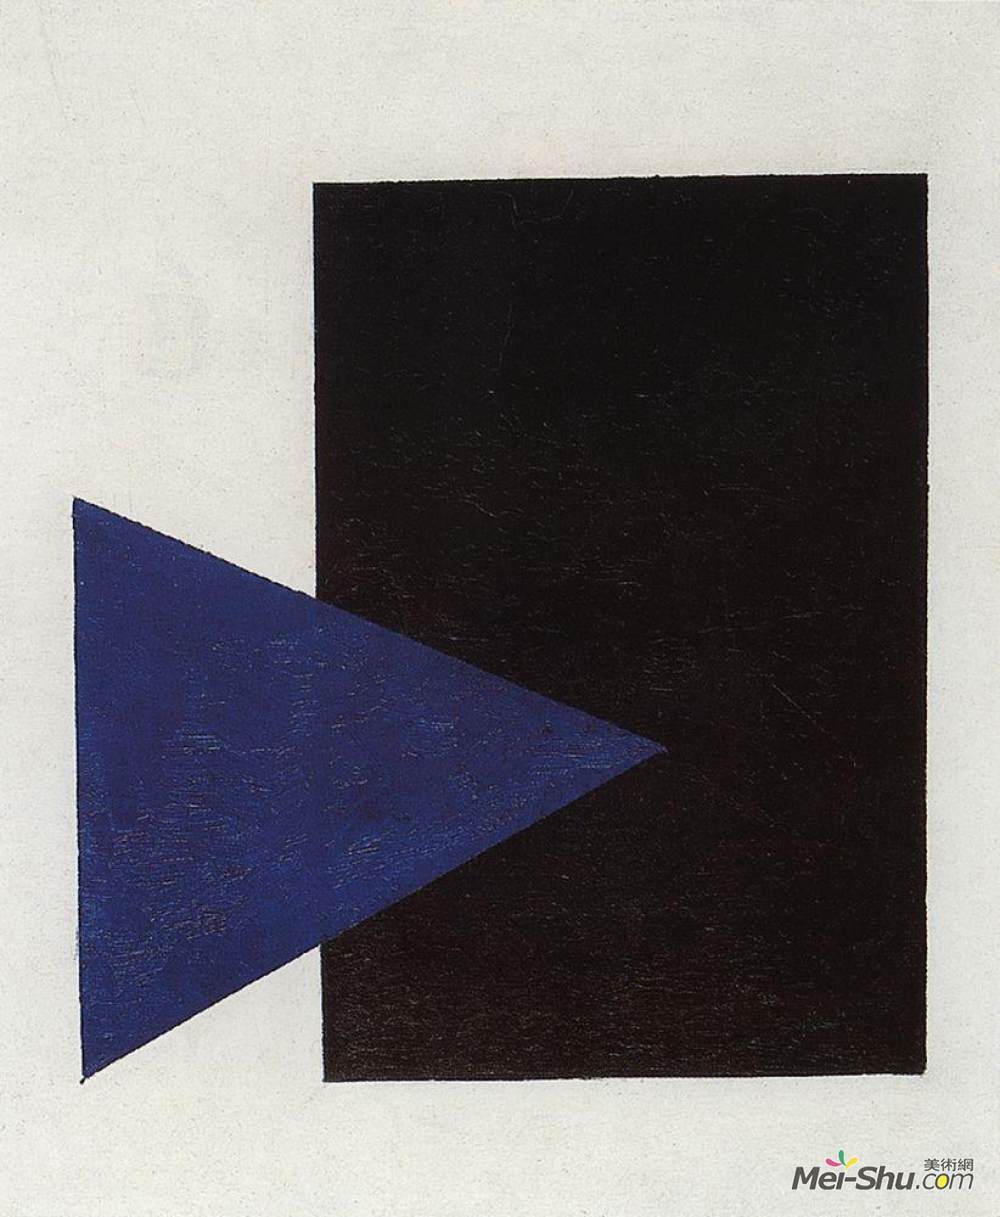 蓝色三角形和黑色正方形的至上主义卡西米尔马列维奇kazimirmalevich